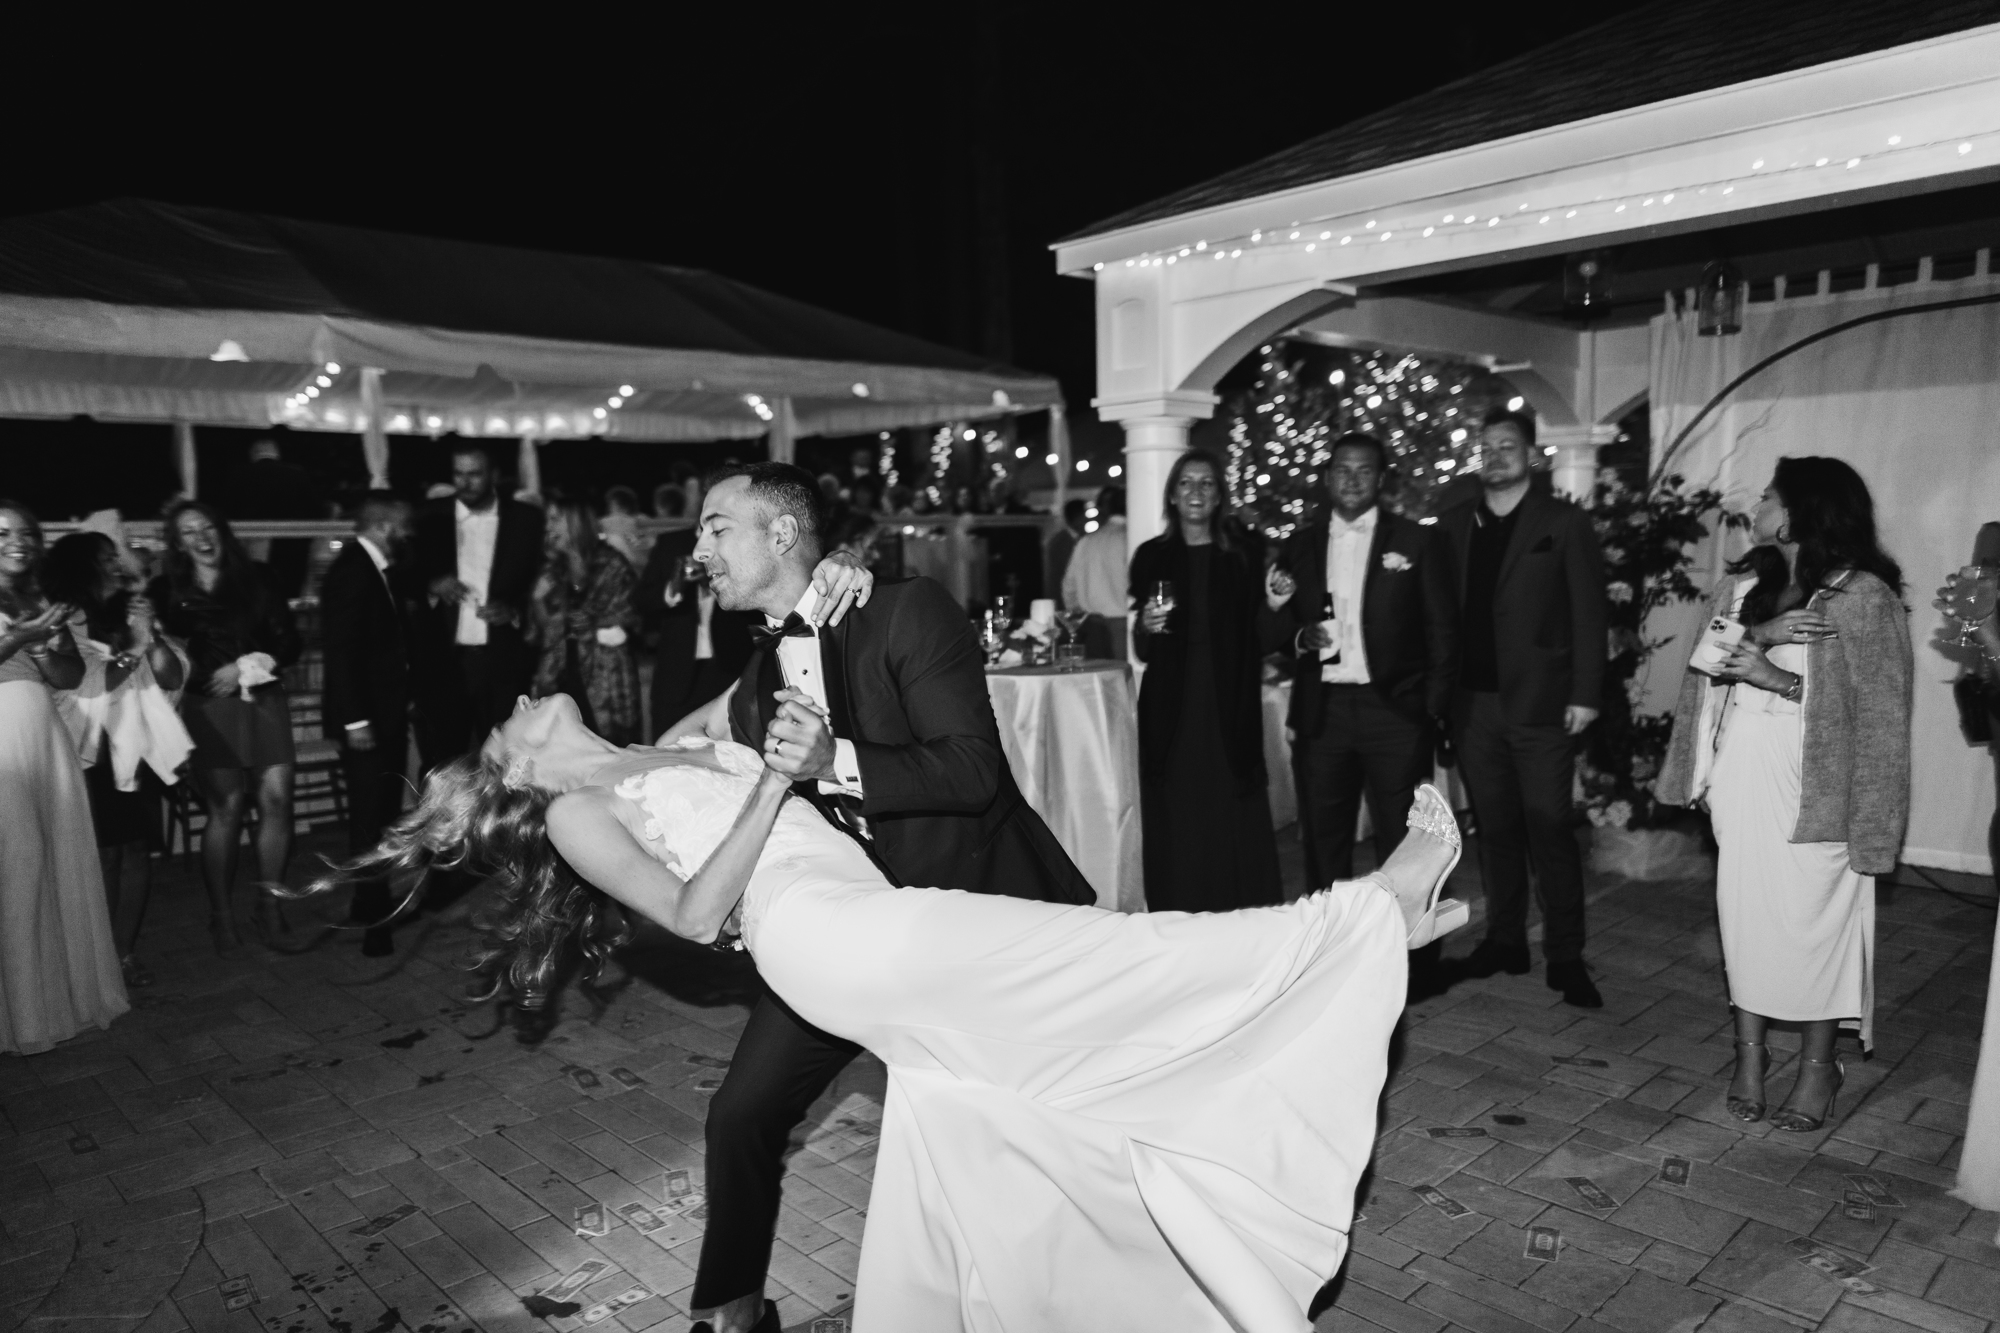 Dance floor candid photos at wedding on Long Island